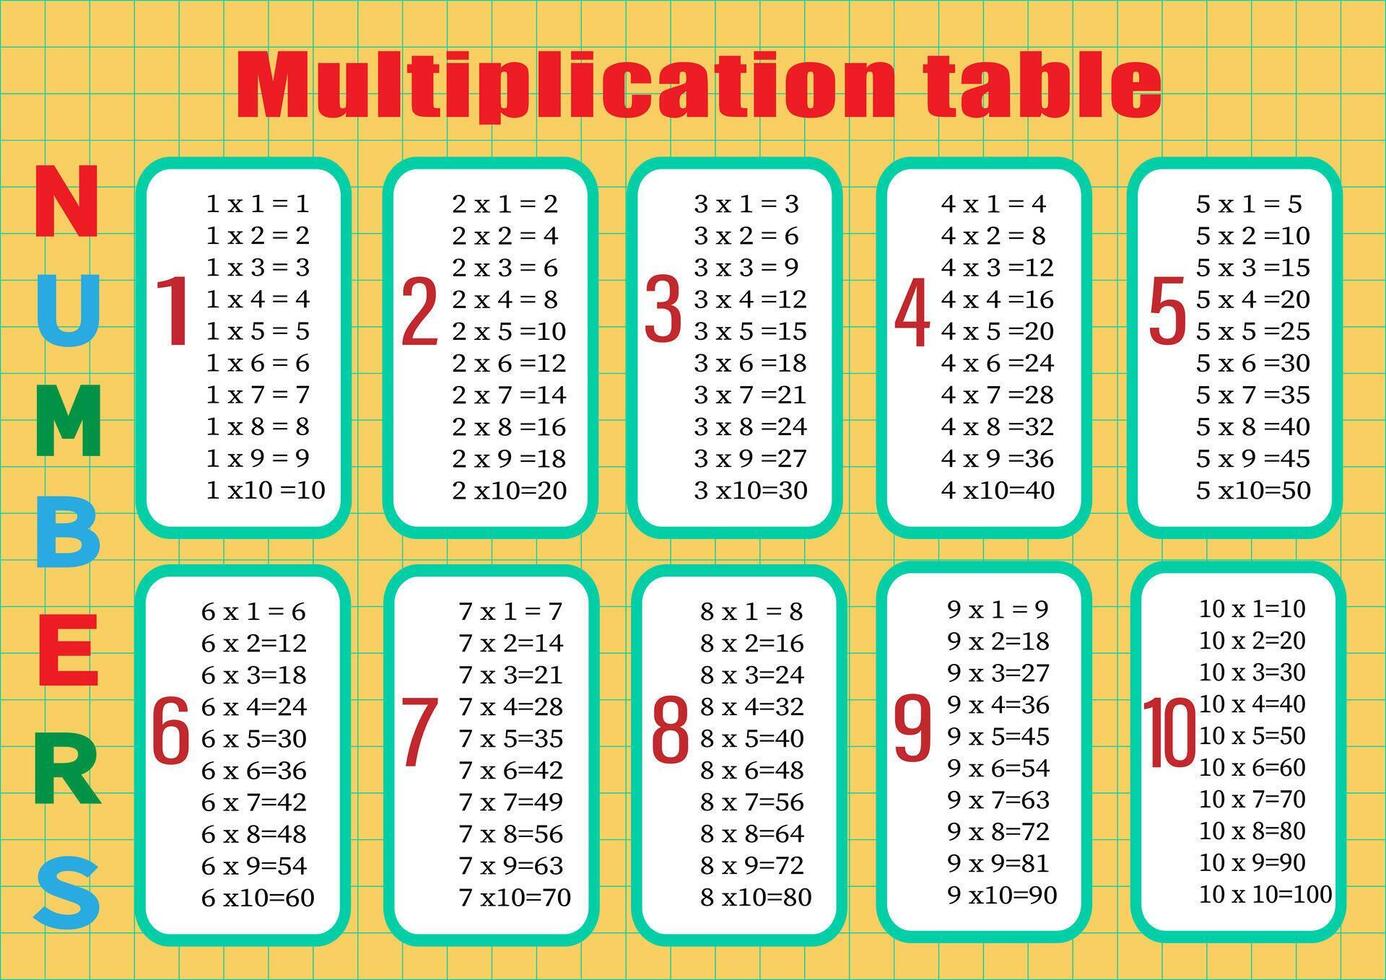 multiplication table de 1 à dix. coloré dessin animé multiplication table vecteur pour enseignement mathématiques. eps10